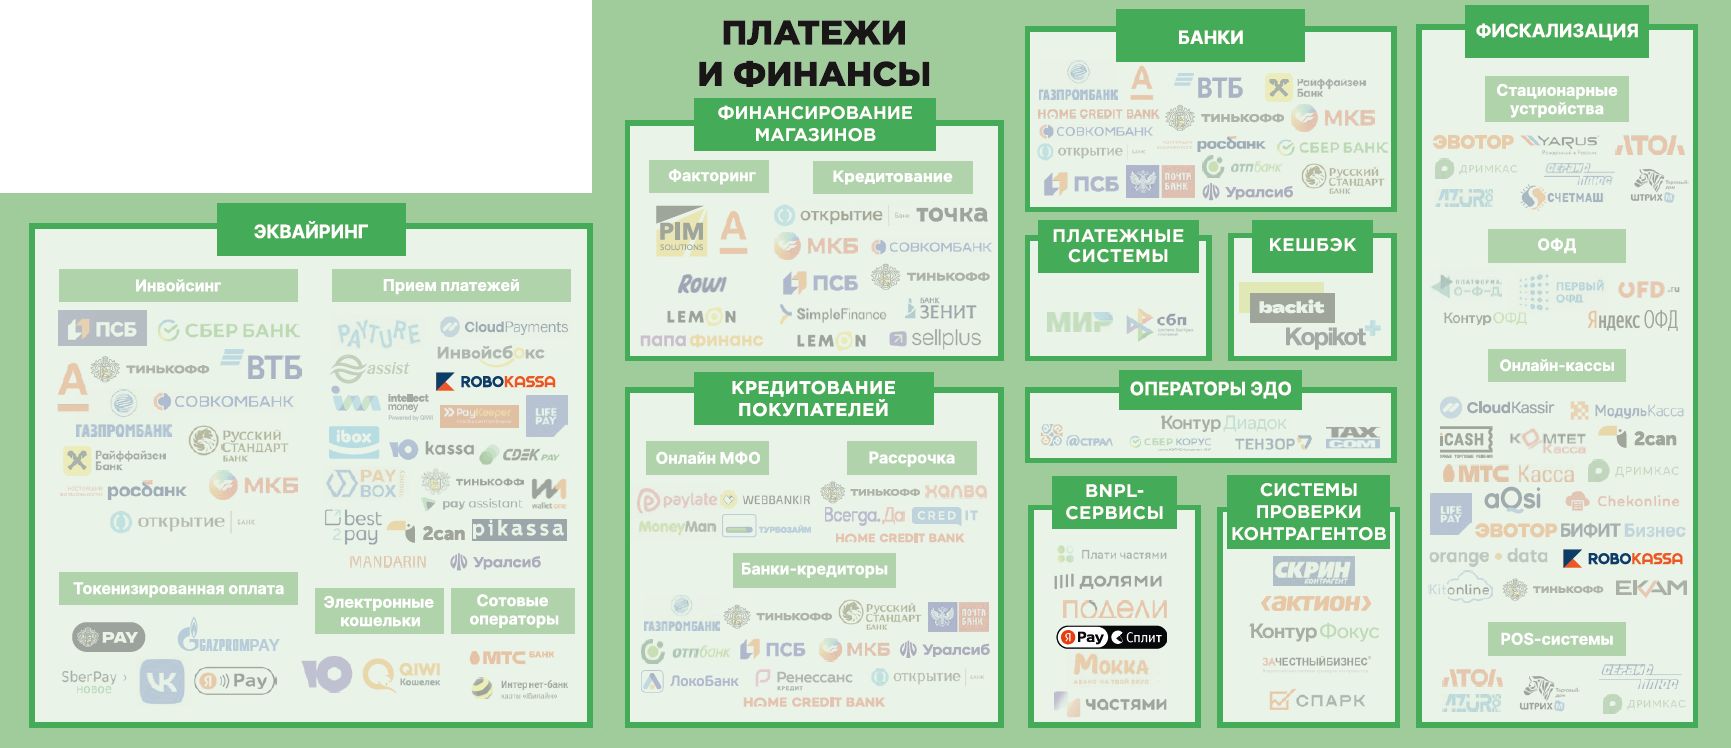 Платежи и финансы. Экосистема электронной торговли в России